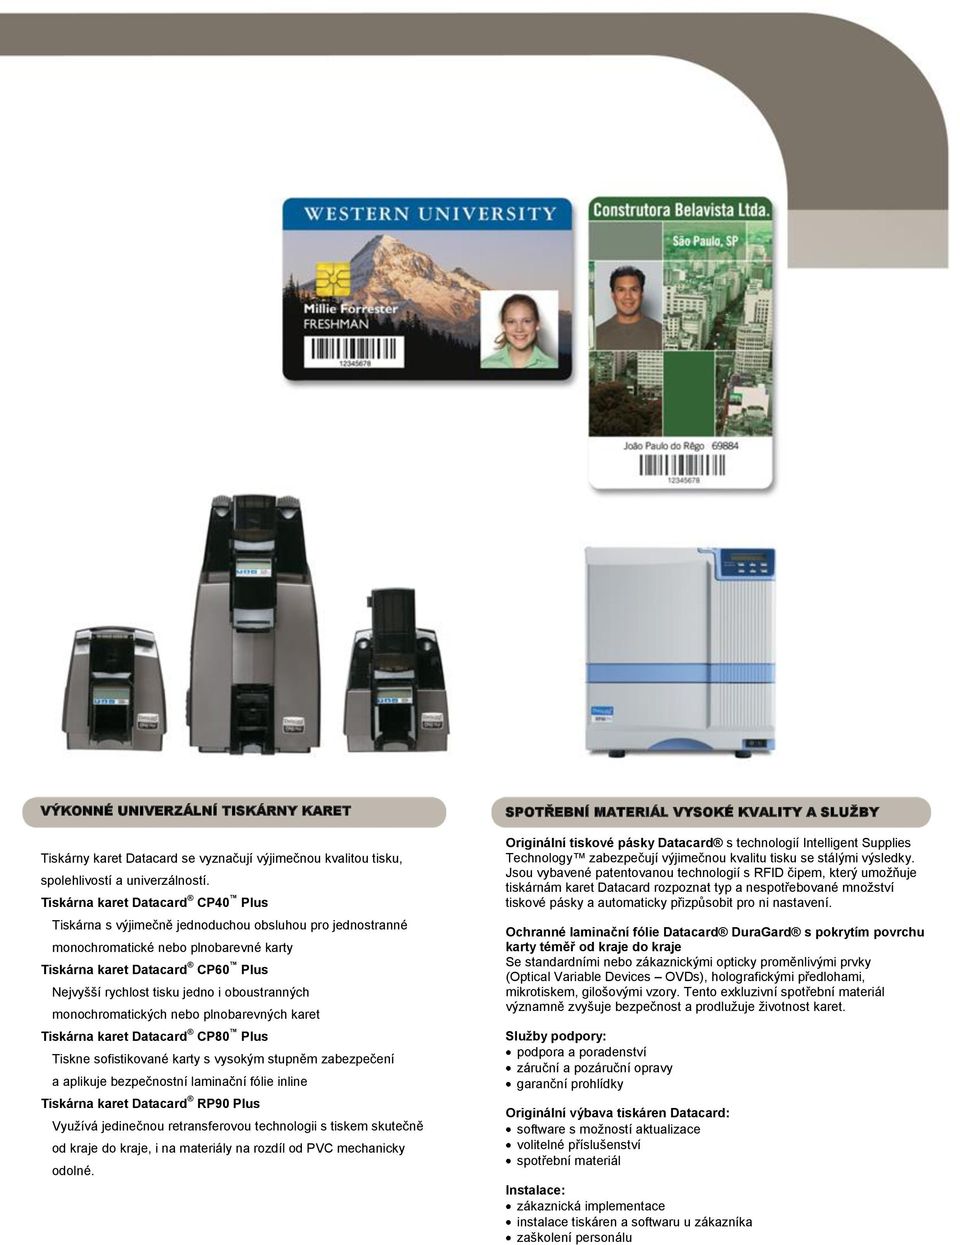 oboustranných monochromatických nebo plnobarevných karet Tiskárna karet Datacard CP80 Plus Tiskne sofistikované karty s vysokým stupněm zabezpečení a aplikuje bezpečnostní laminační fólie inline